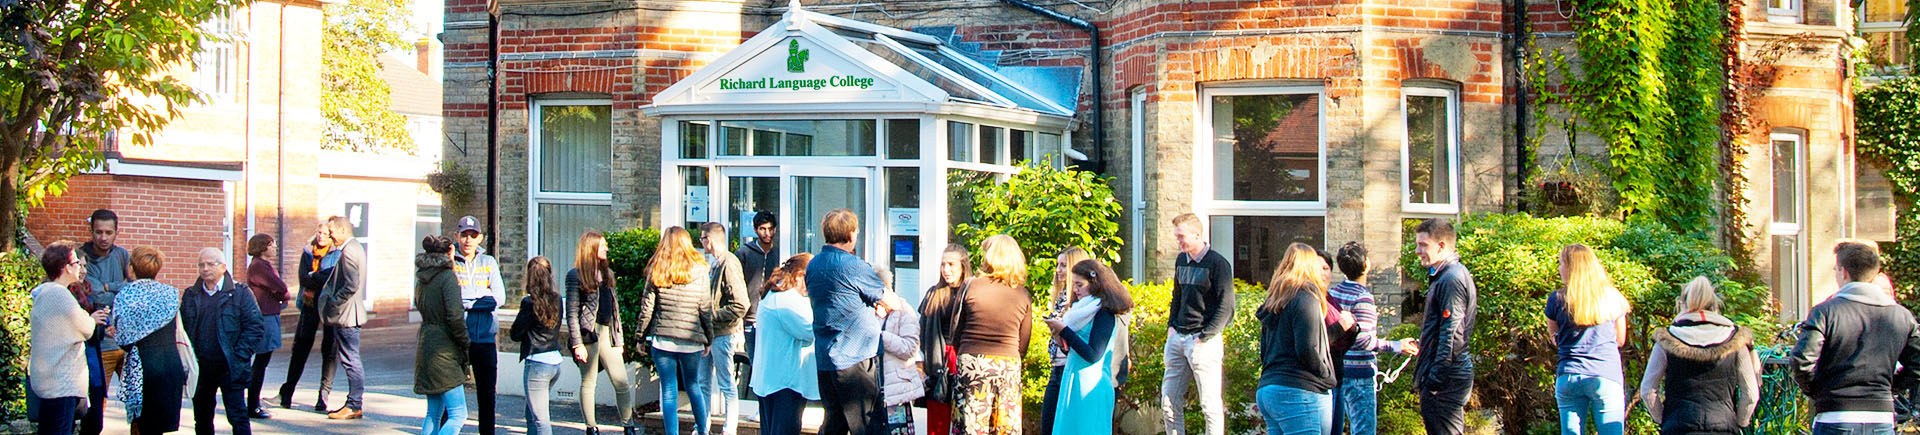 Обучение в Англии в школе Richard Language College в Борнмуте